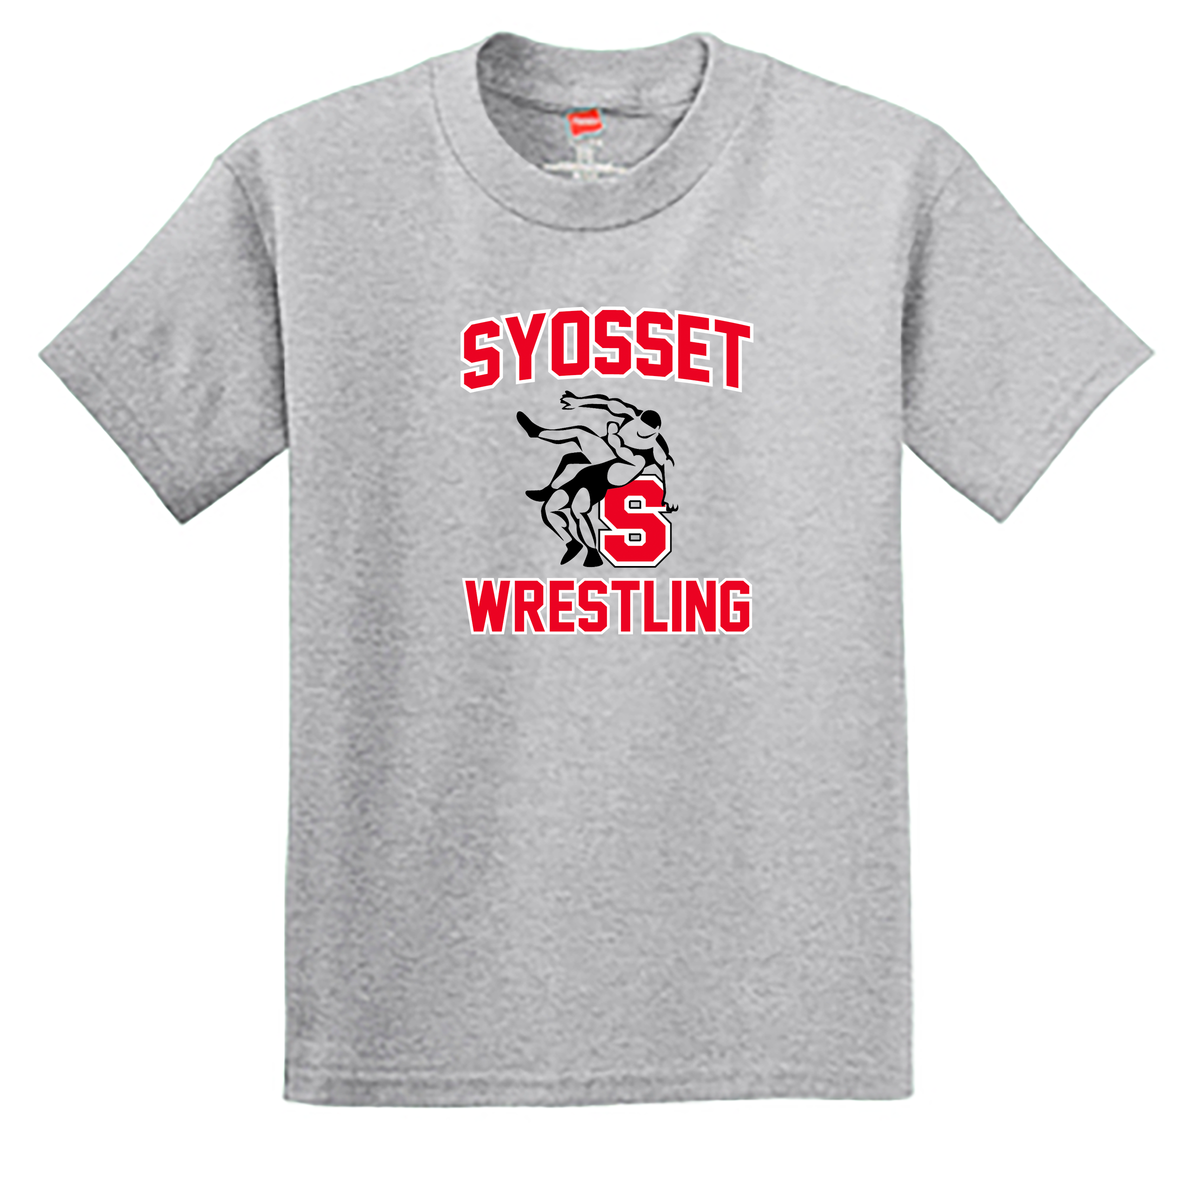 Syosset Wrestling Youth T-Shirt